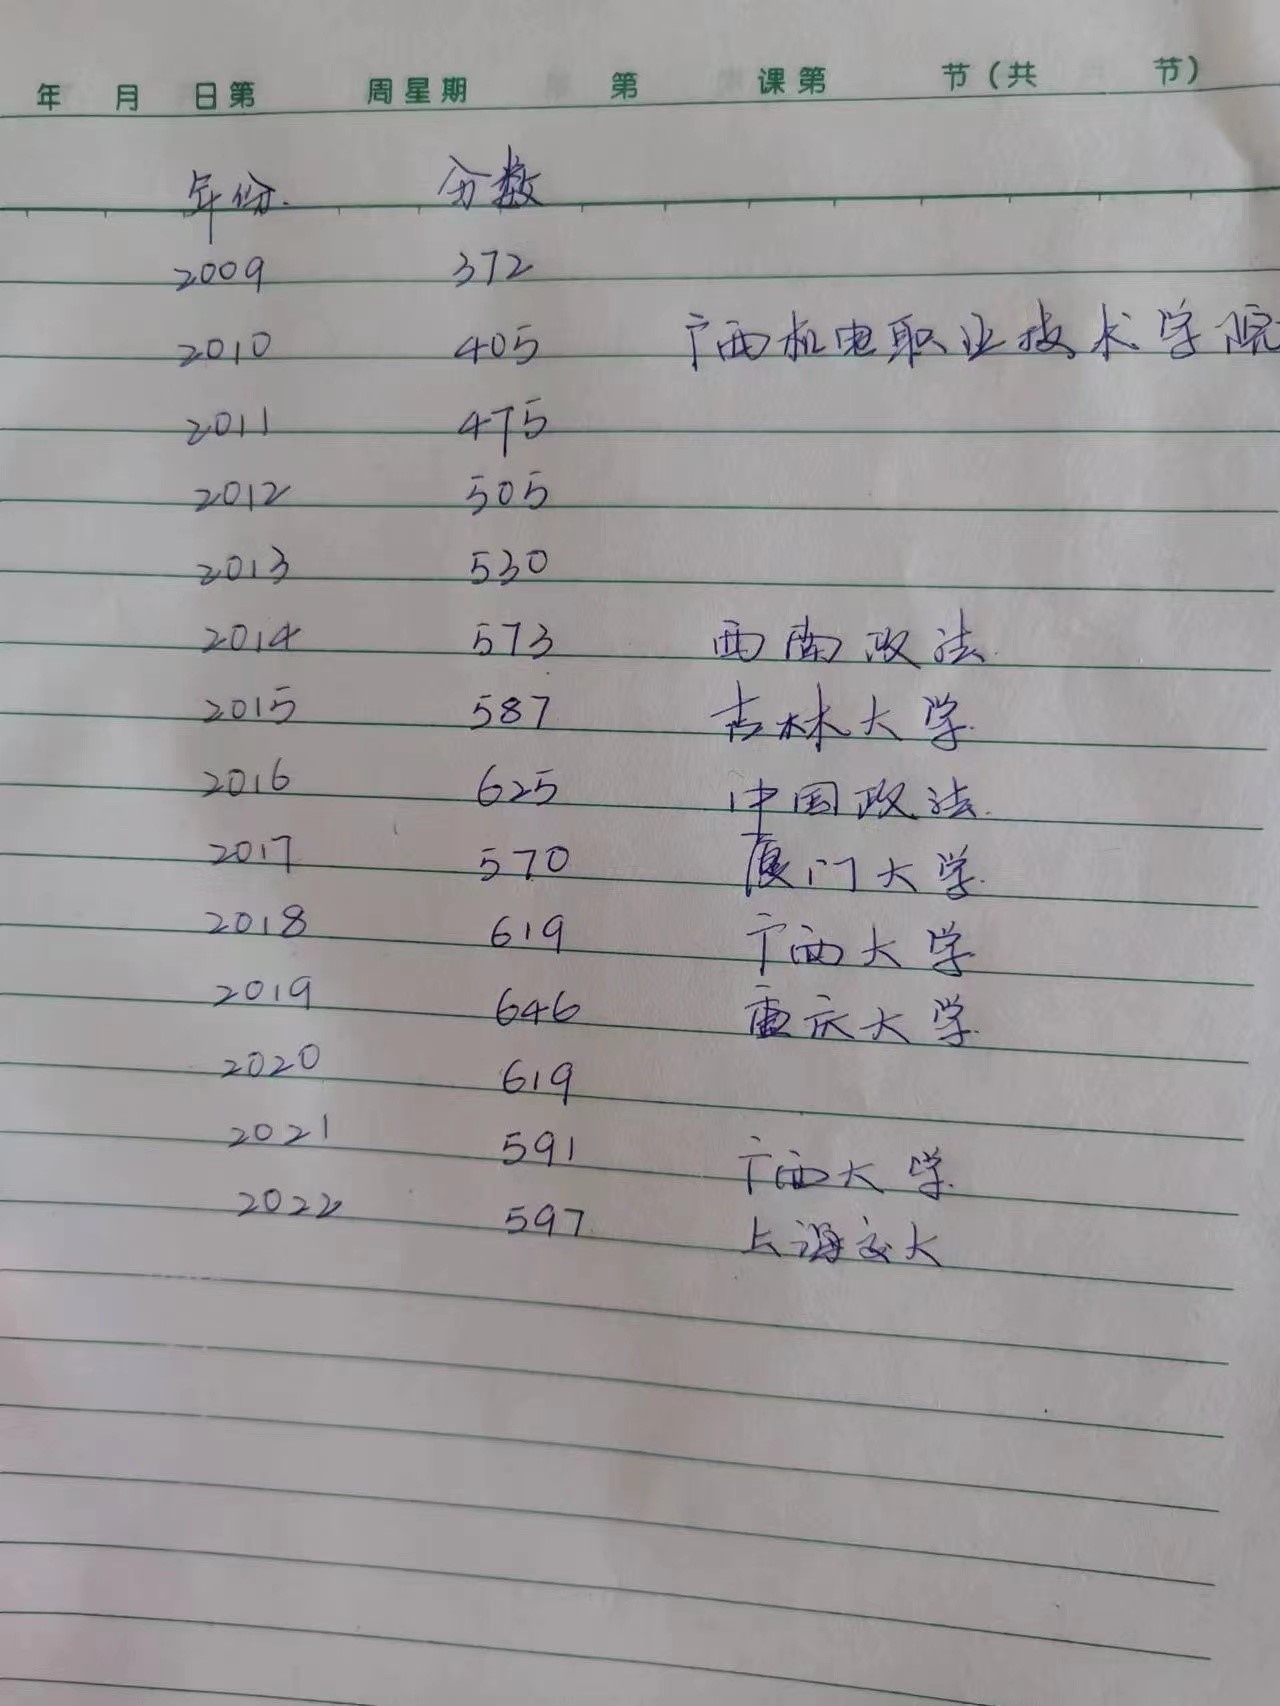 唐尚珺大概率填师范类 第15次高考成绩为594分